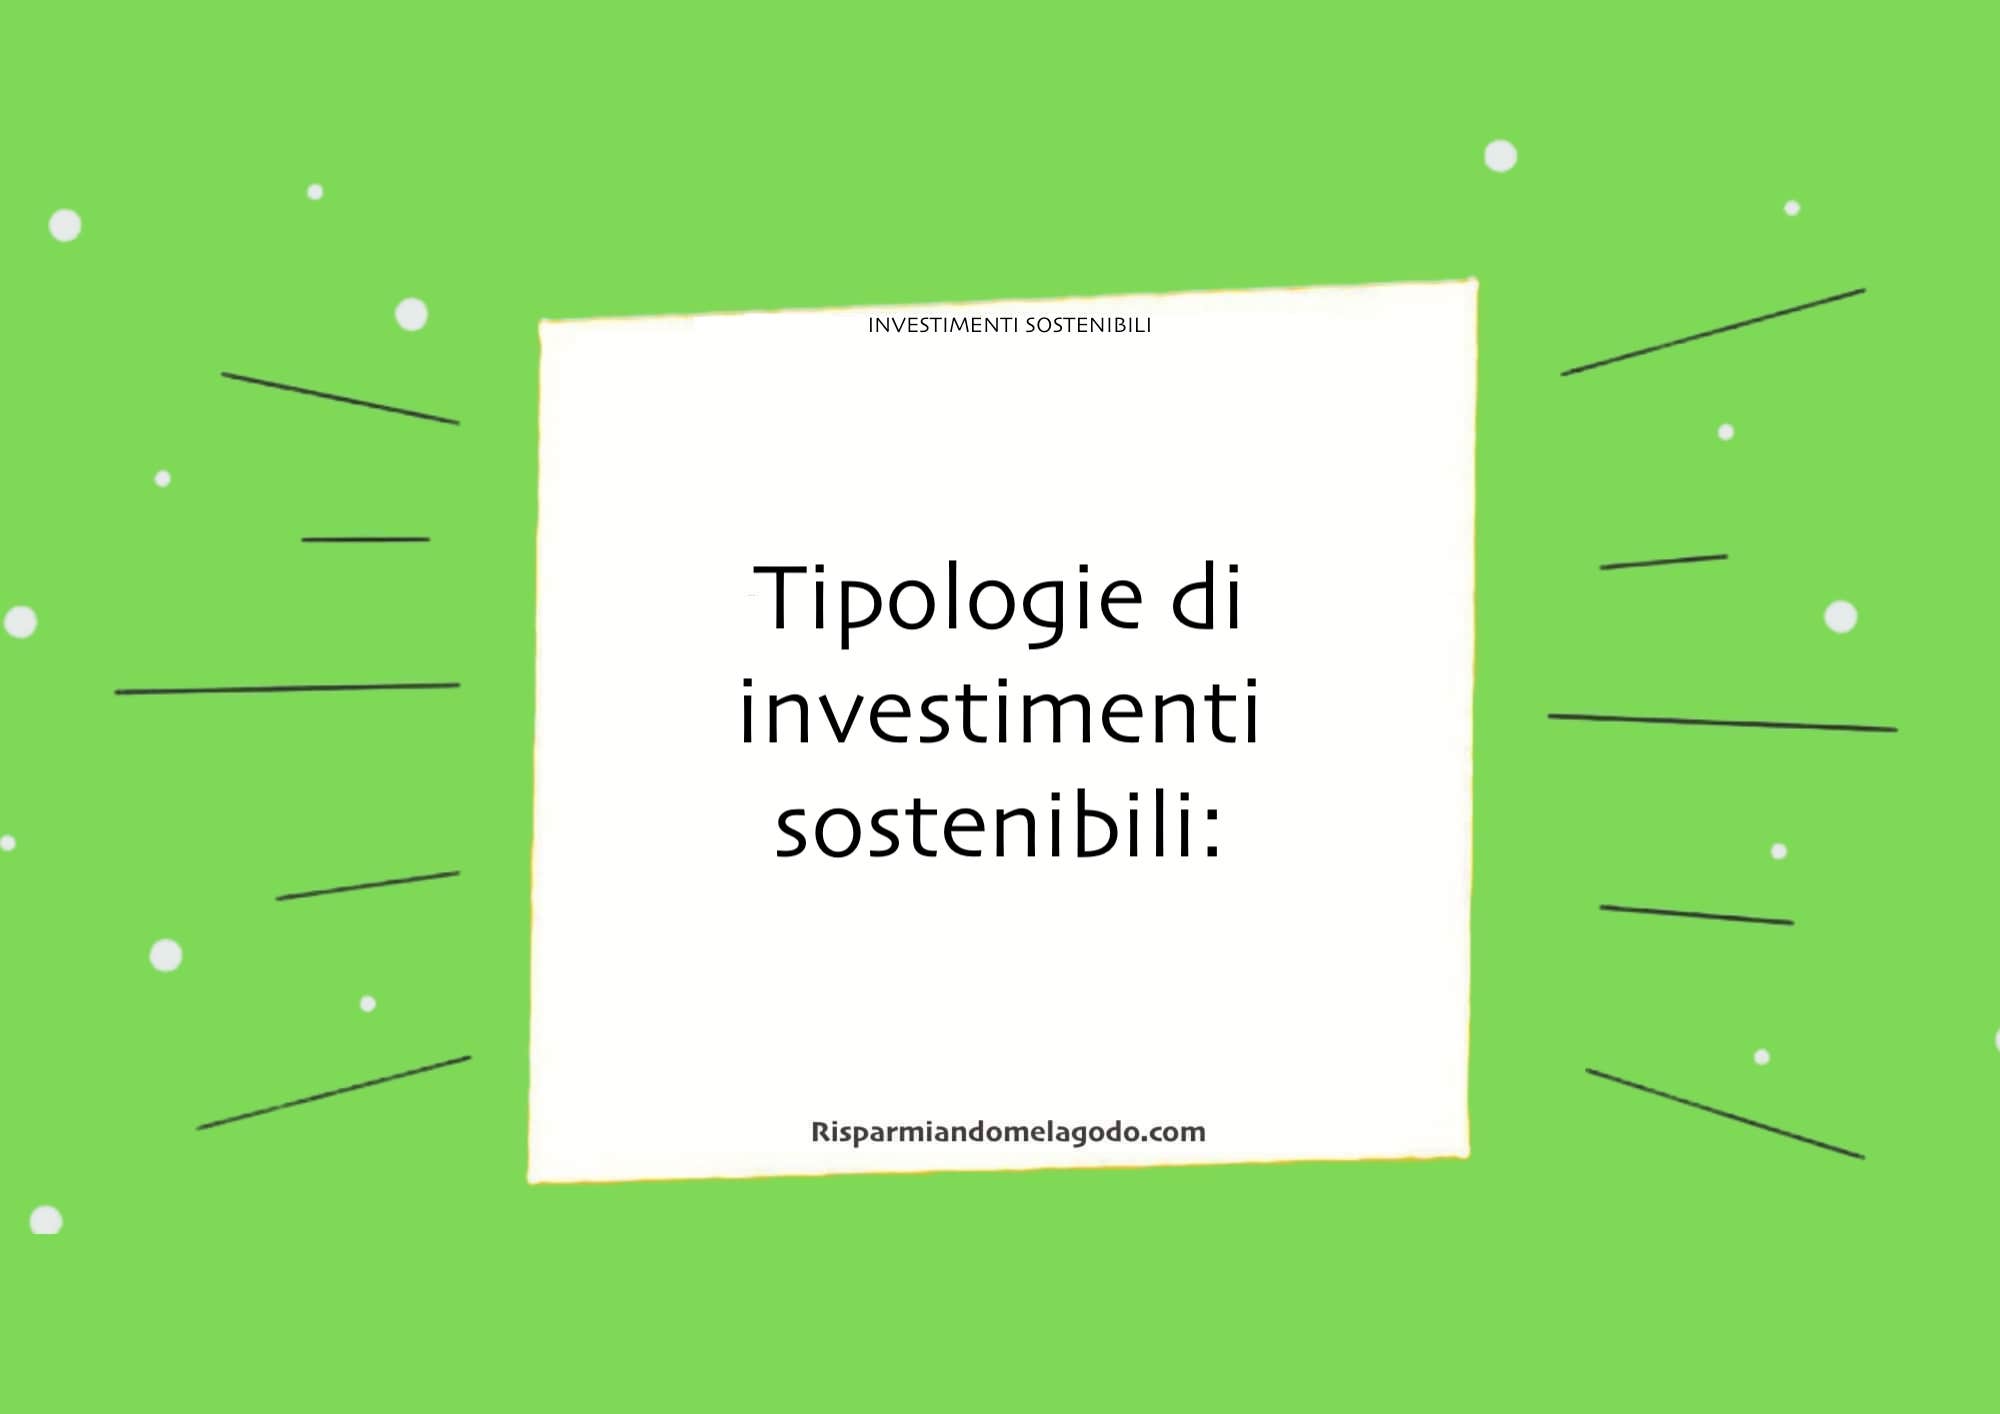 Tipologie di investimenti sostenibili: